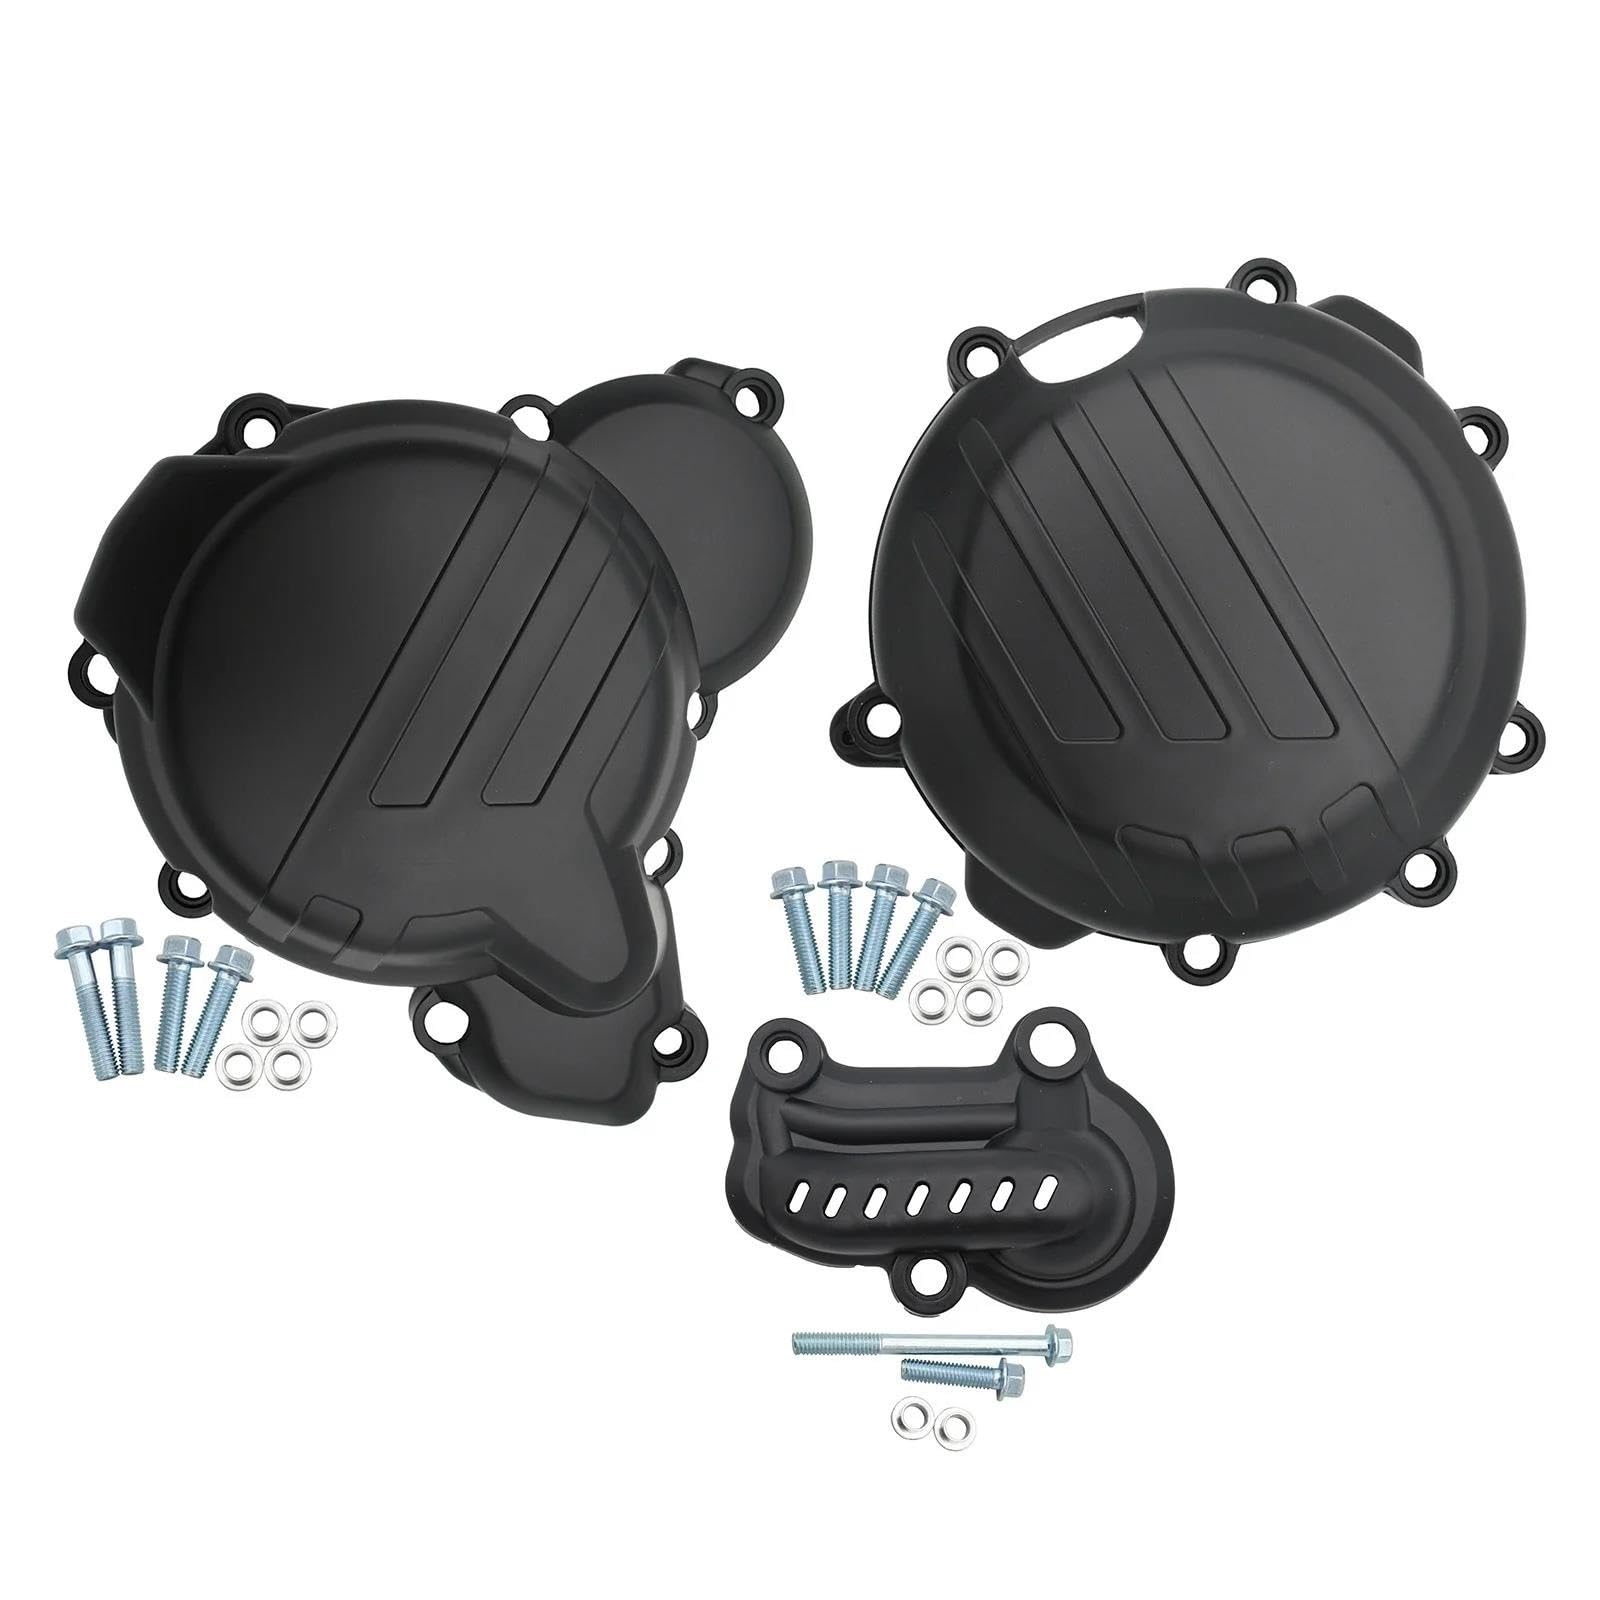 Motorräder kupplungsdeckel Für KTM 250 300 SX XC EXC XCW TPI 2019-2022 Motorrad Motor Stator Seite Abdeckung Schutz Kurbelgehäuse Schutz Kurbelgehäuse Motordeckel (Color : Black) von TianChuang